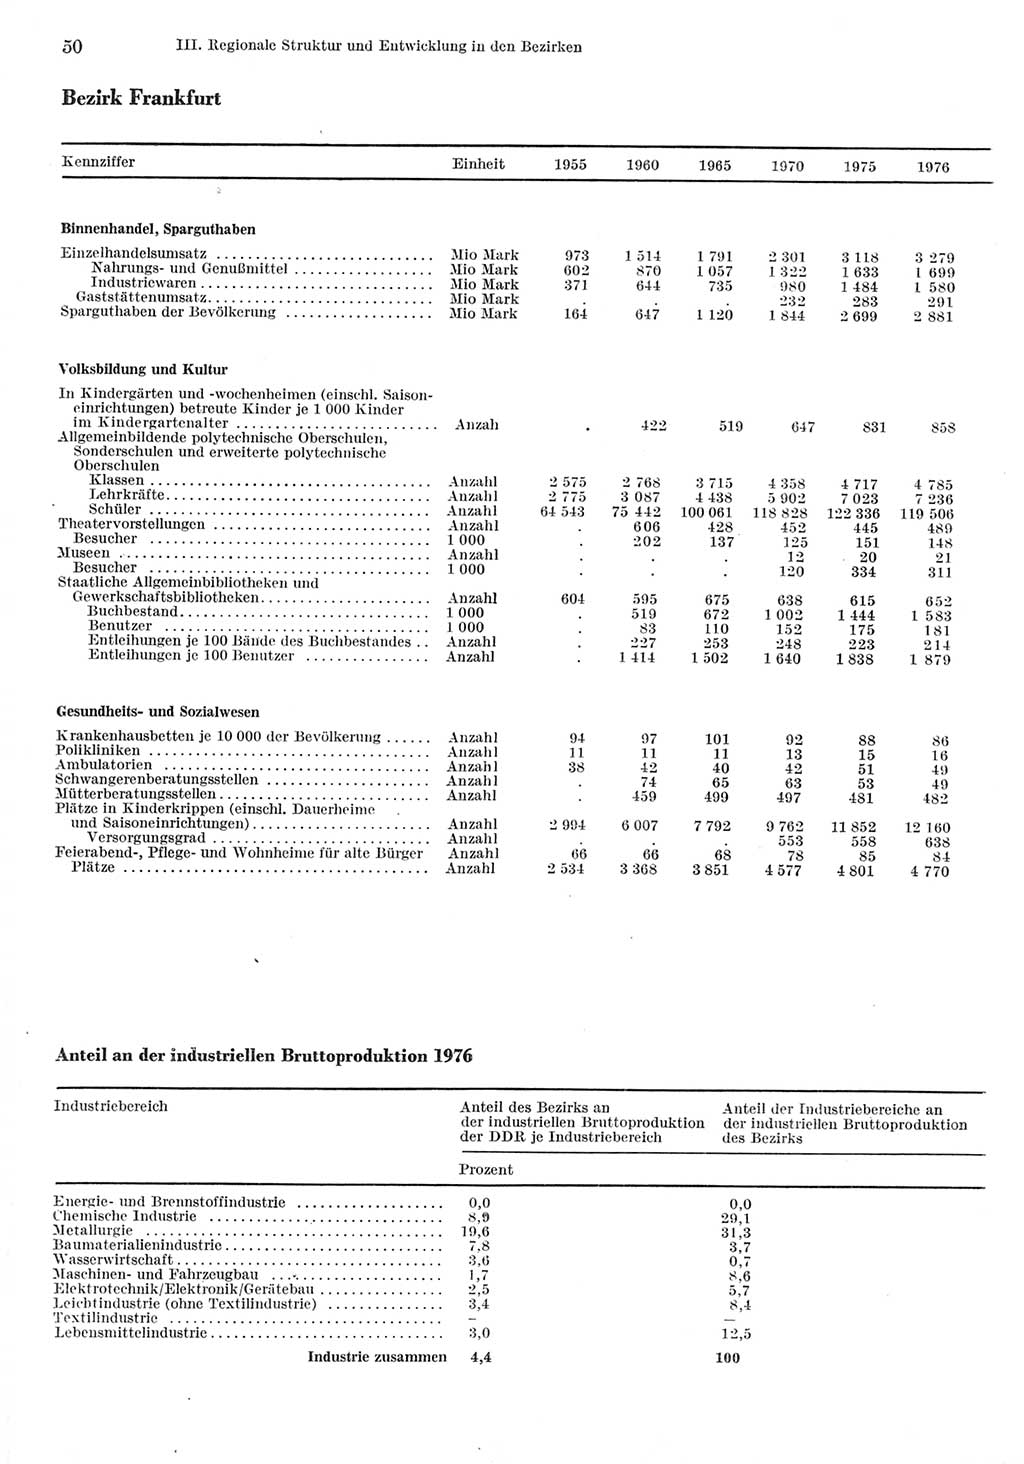 Statistisches Jahrbuch der Deutschen Demokratischen Republik (DDR) 1977, Seite 50 (Stat. Jb. DDR 1977, S. 50)